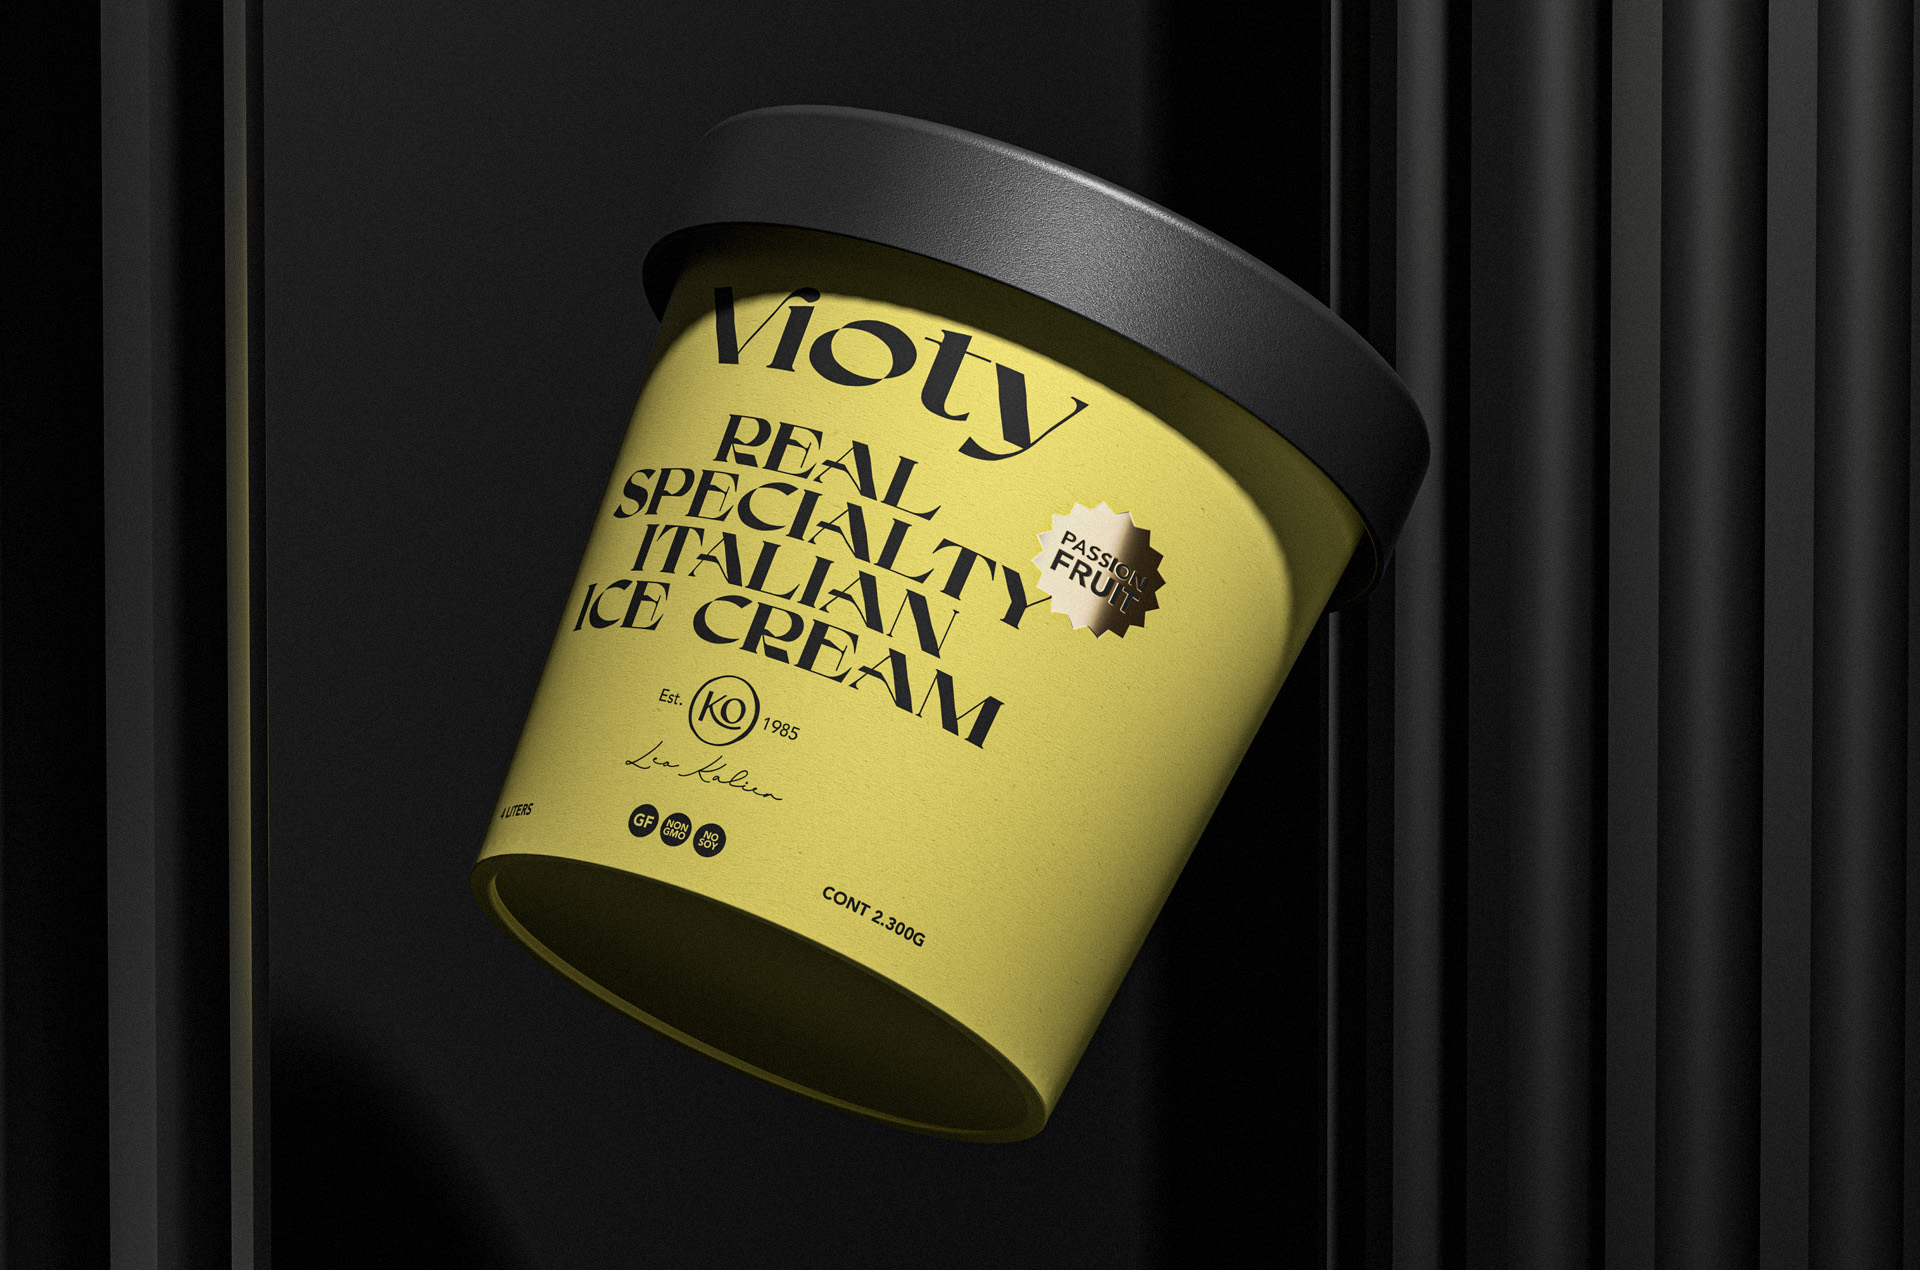 vioty ice cream